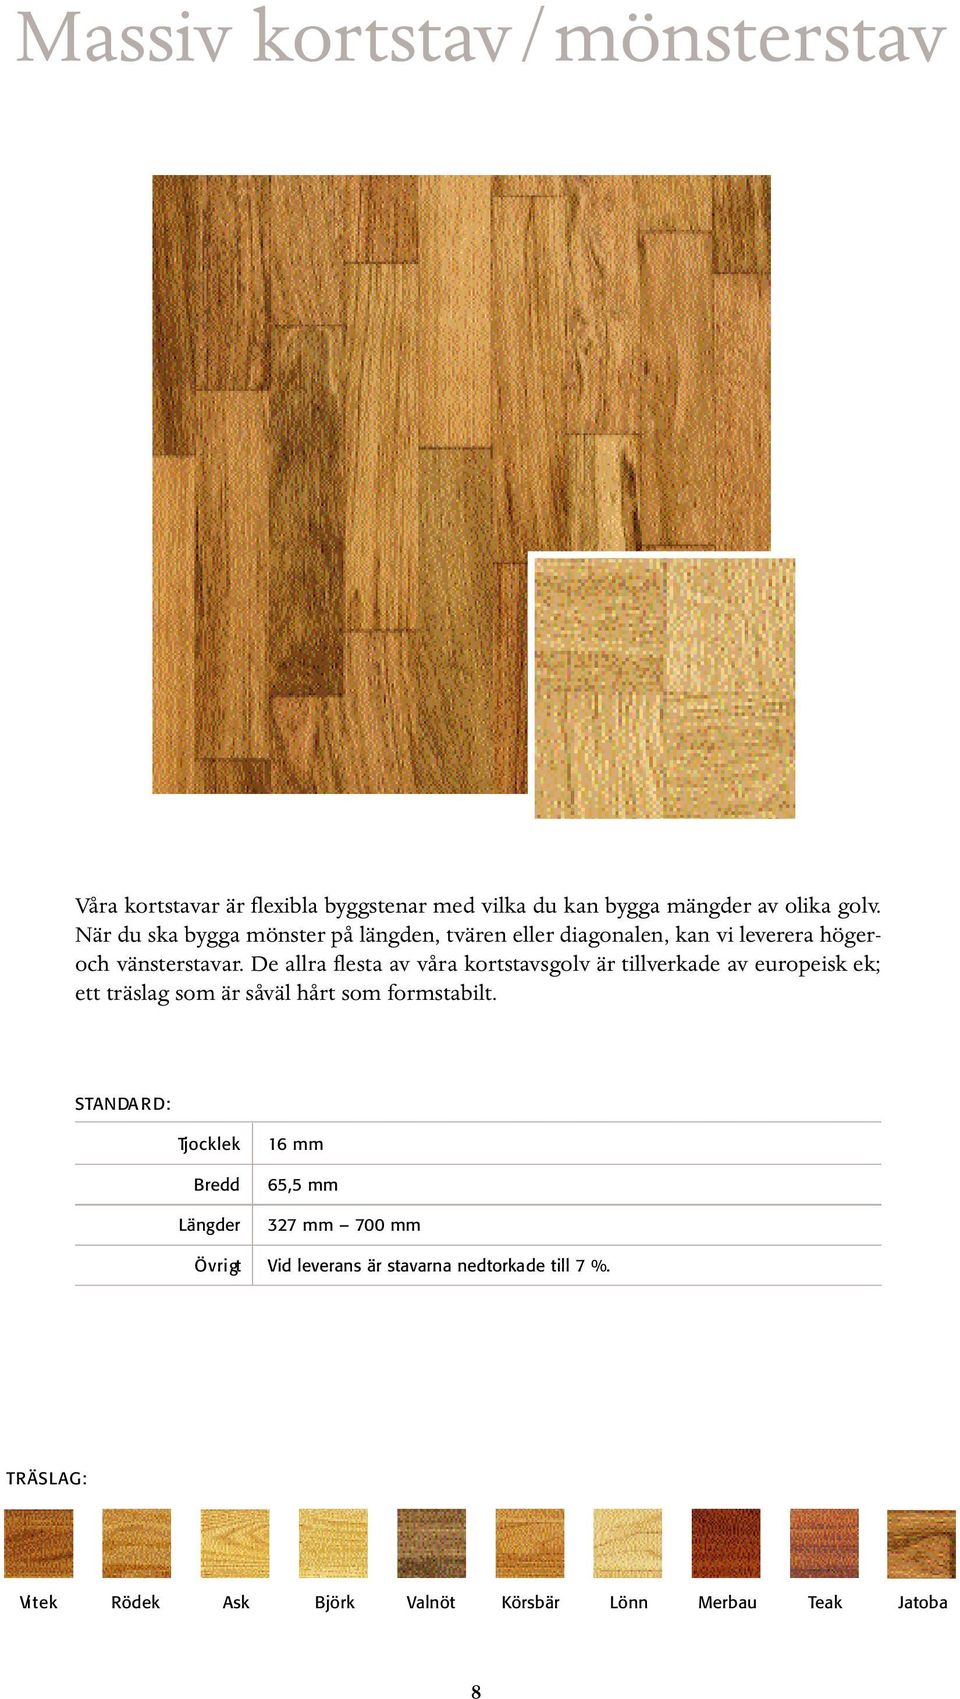 De allra flesta av våra kortstavsgolv är tillverkade av europeisk ek; ett träslag som är såväl hårt som formstabilt.